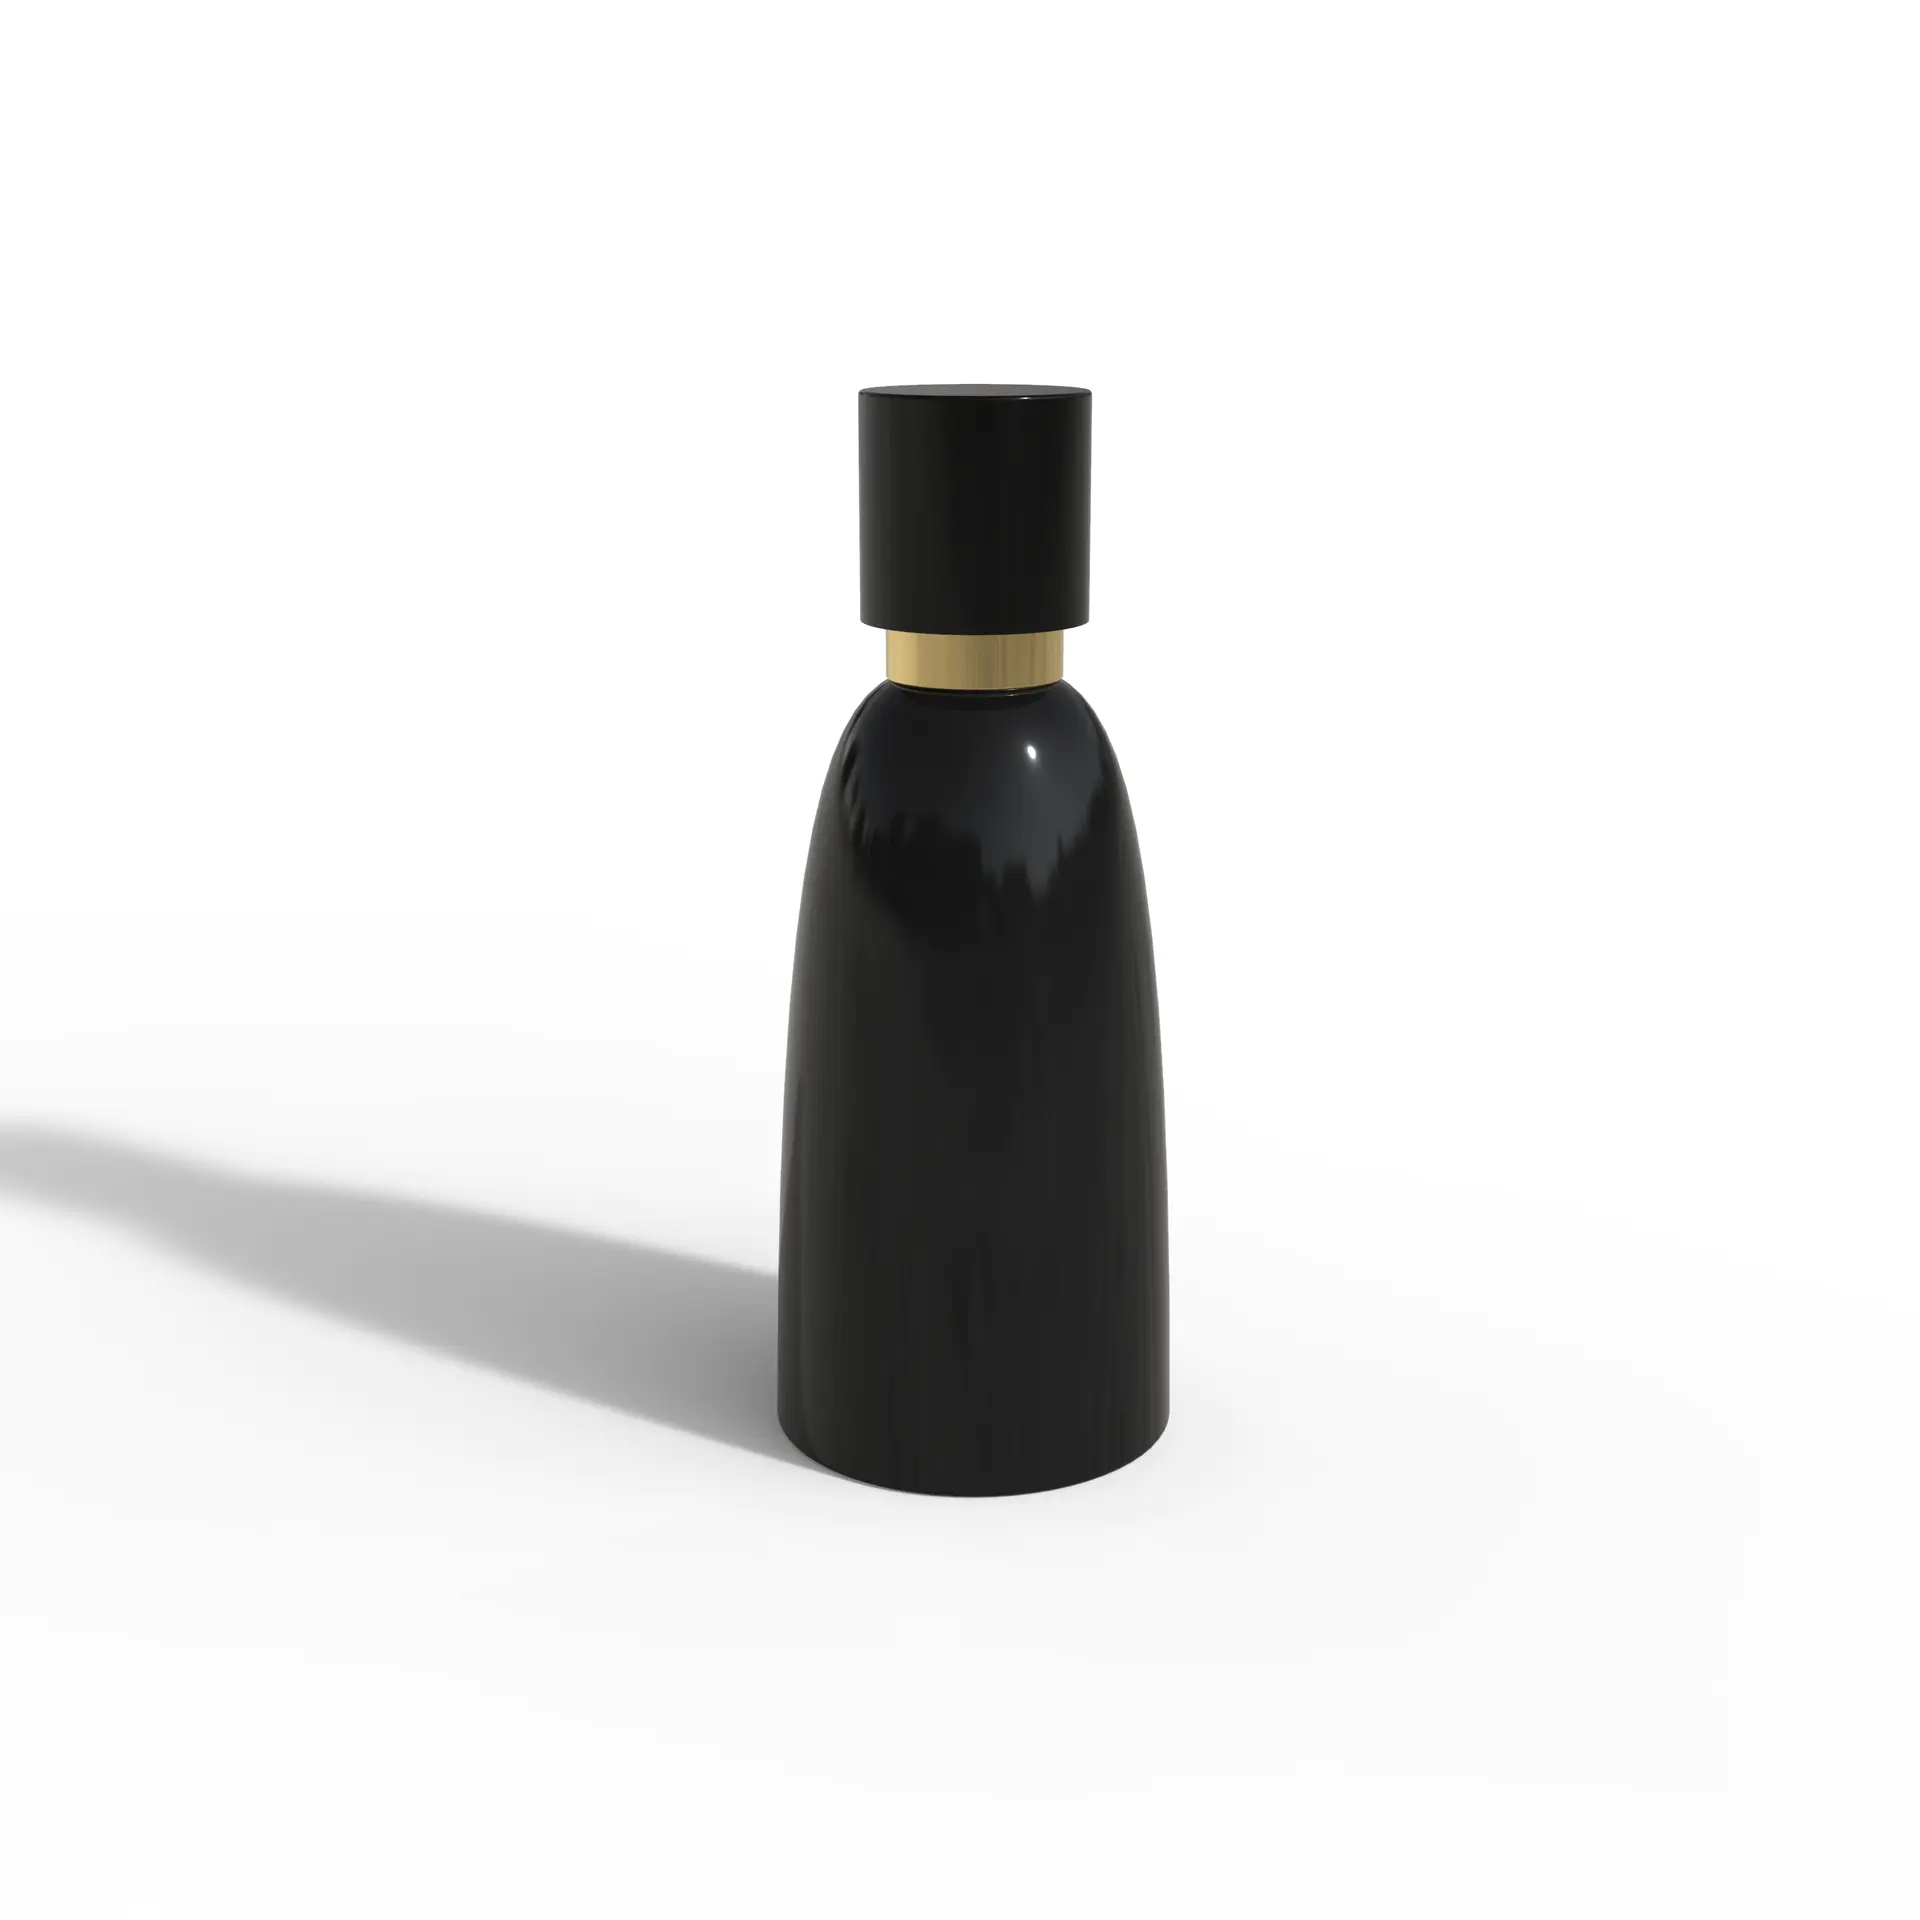 100ml Bottle Size Glass